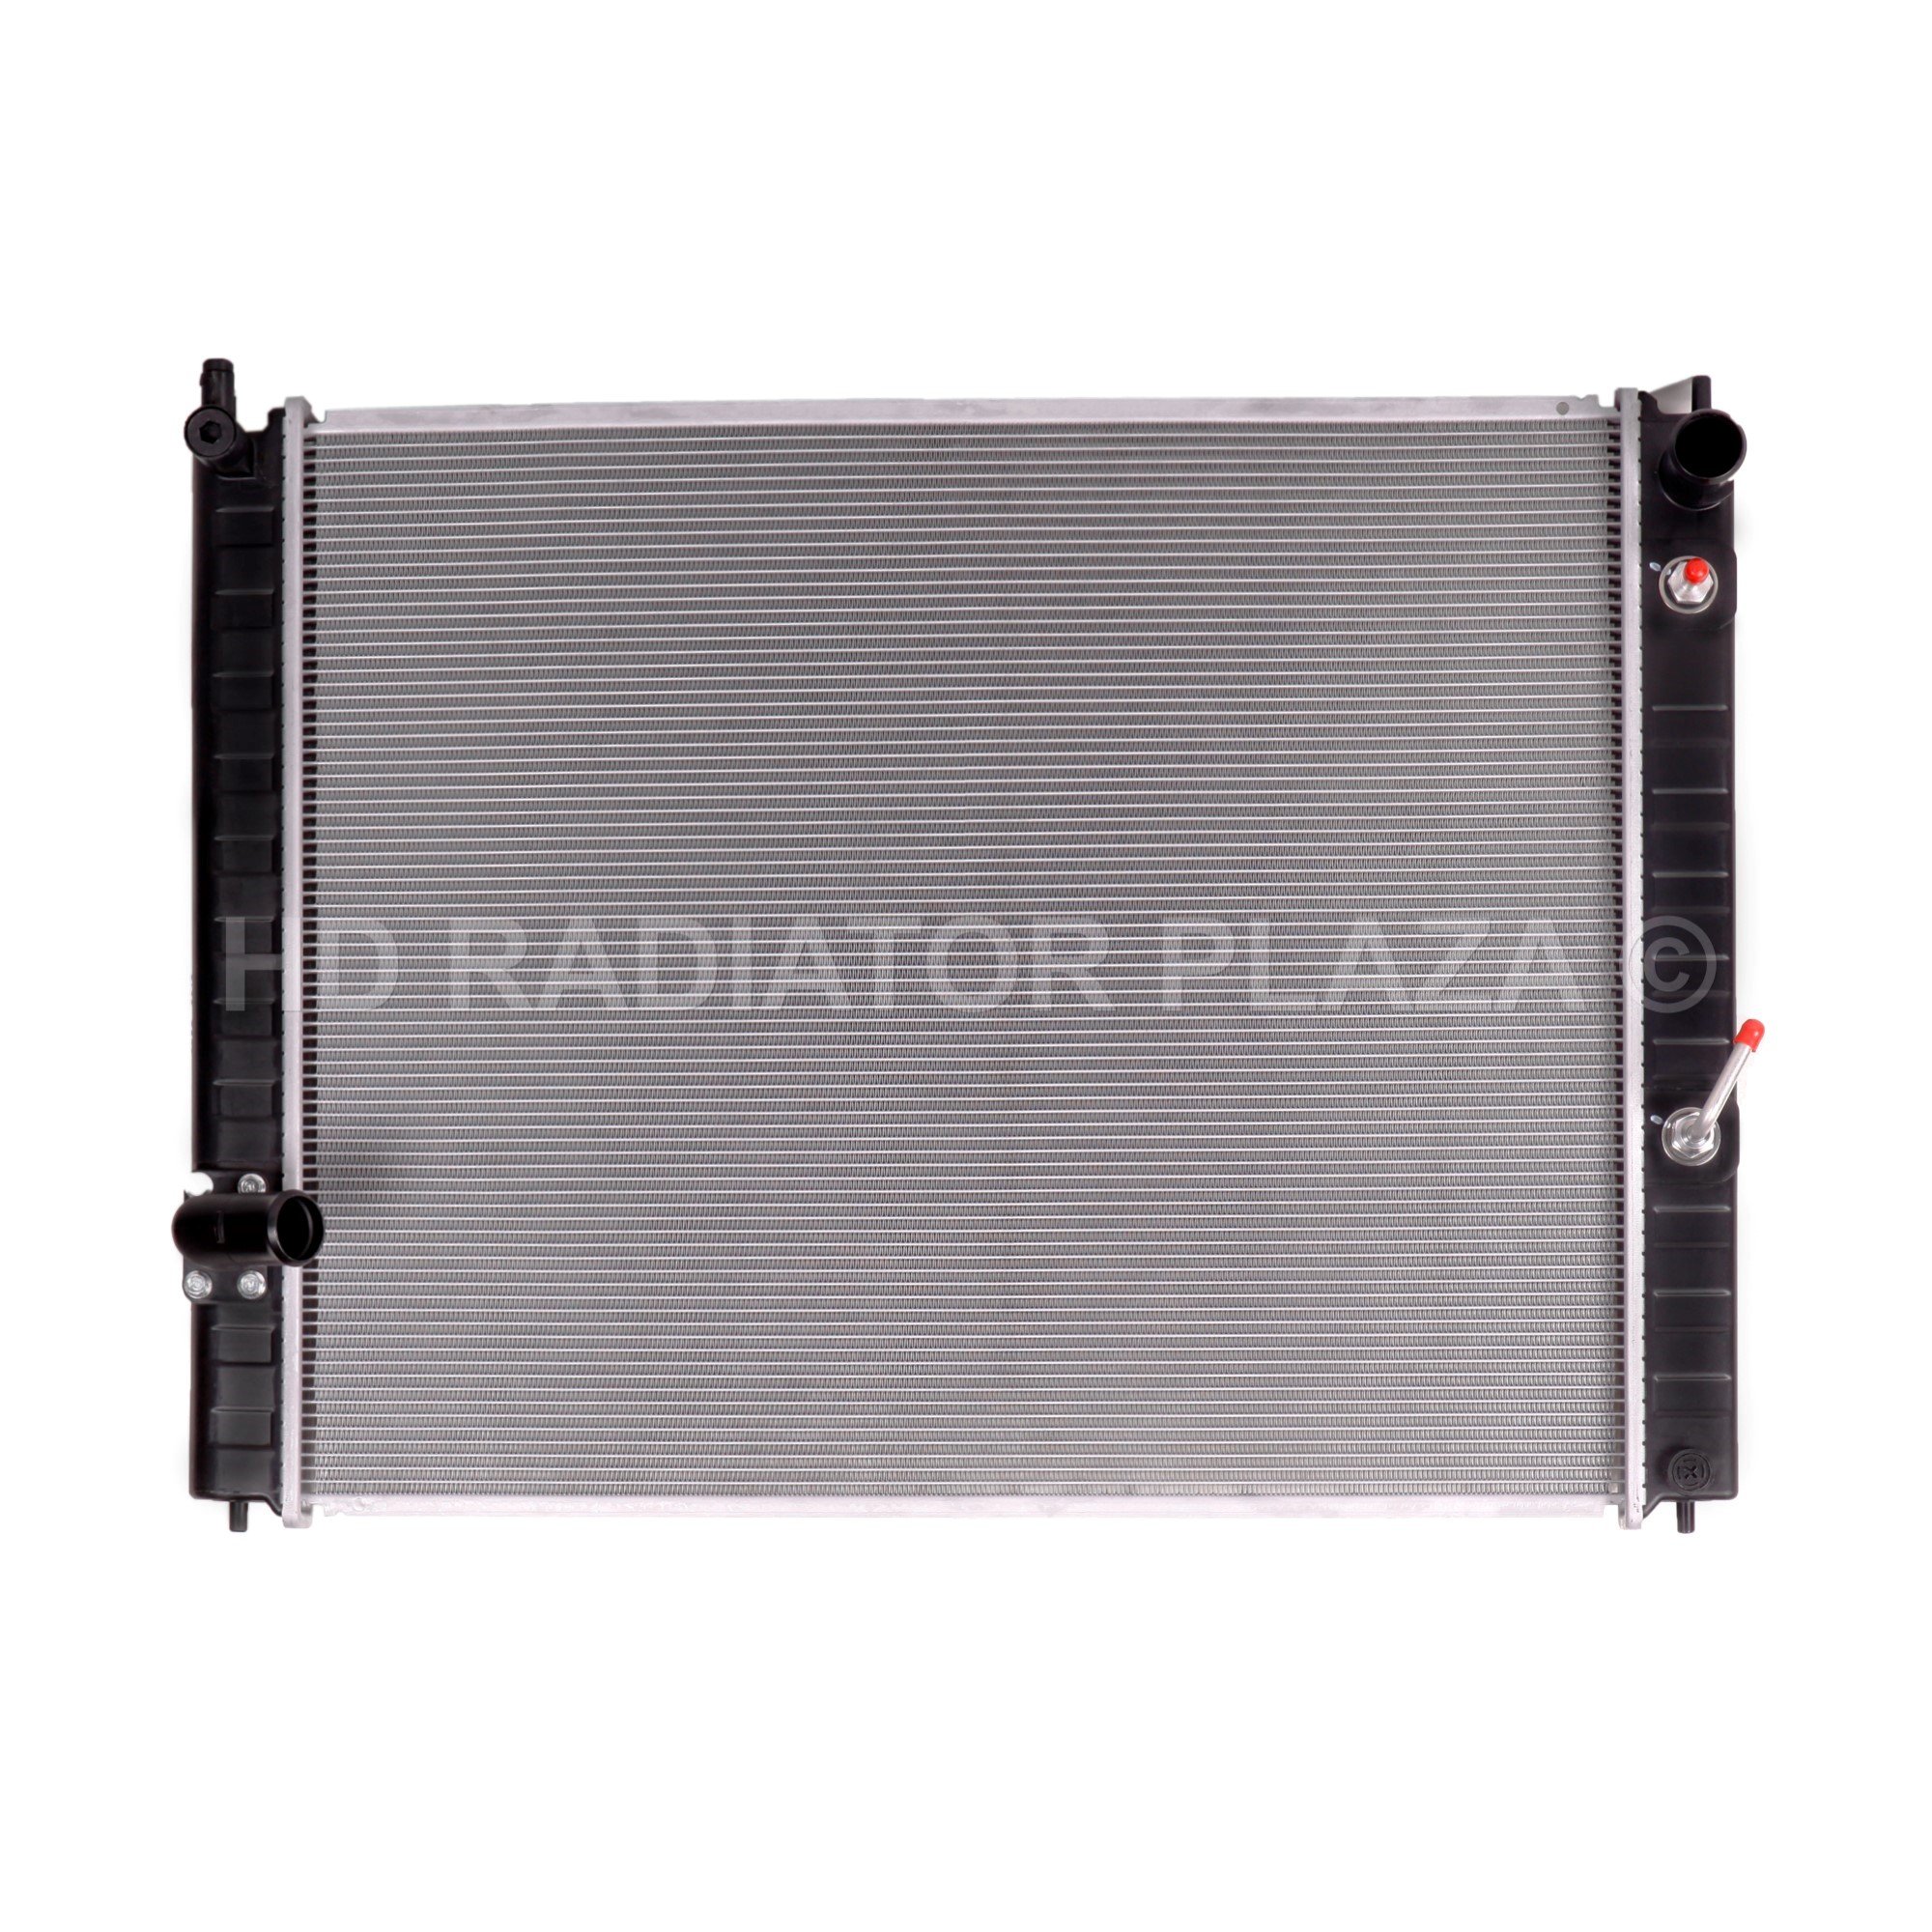 Radiator for 08-15 Infiniti QX50 / QX70 / EX35 / FX35 / EX37 / FX37